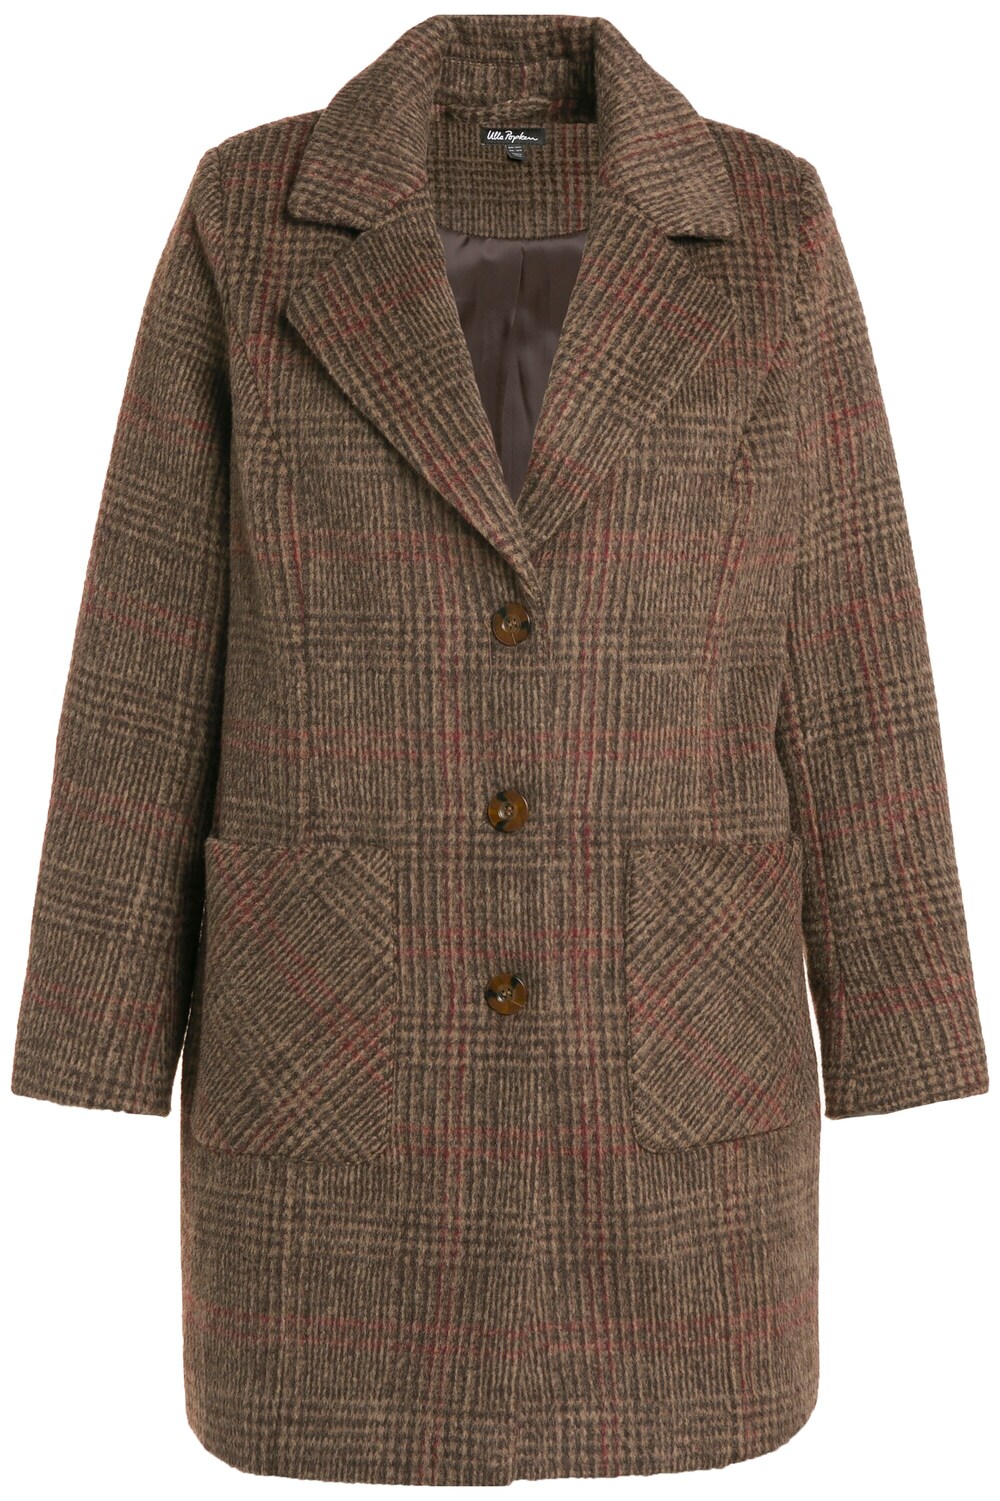 Межсезонное пальто Ulla Popken, пестрый коричневый межсезонное пальто ulla popken пестрый коричневый